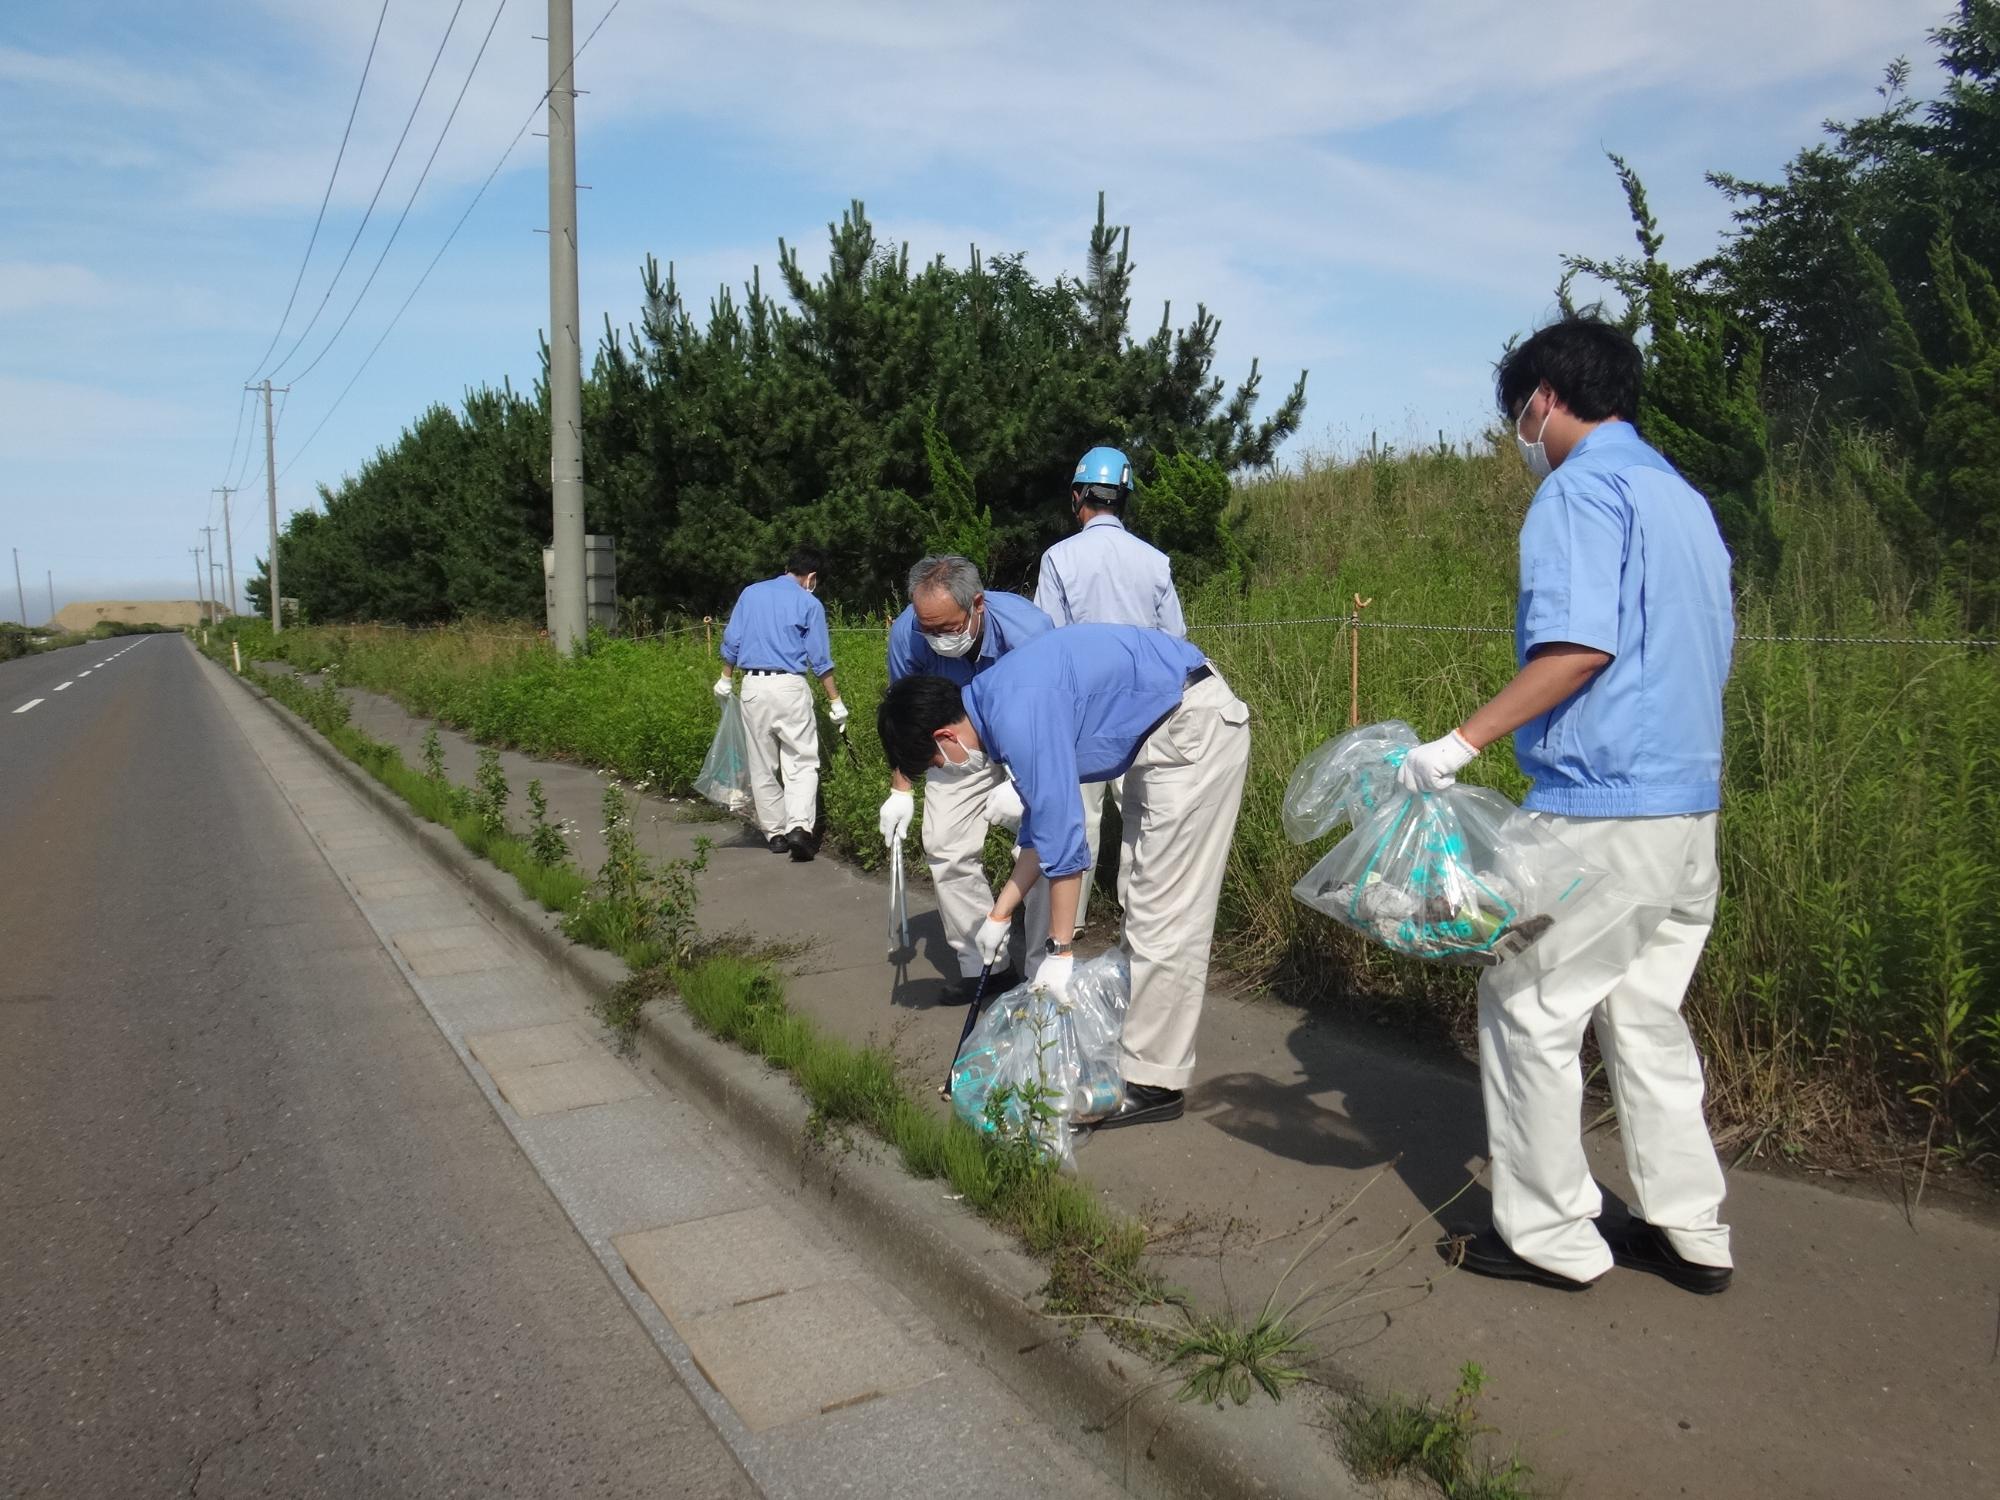 歩道を歩きながらボランティア用ごみ袋を手に、ごみを拾っている写真